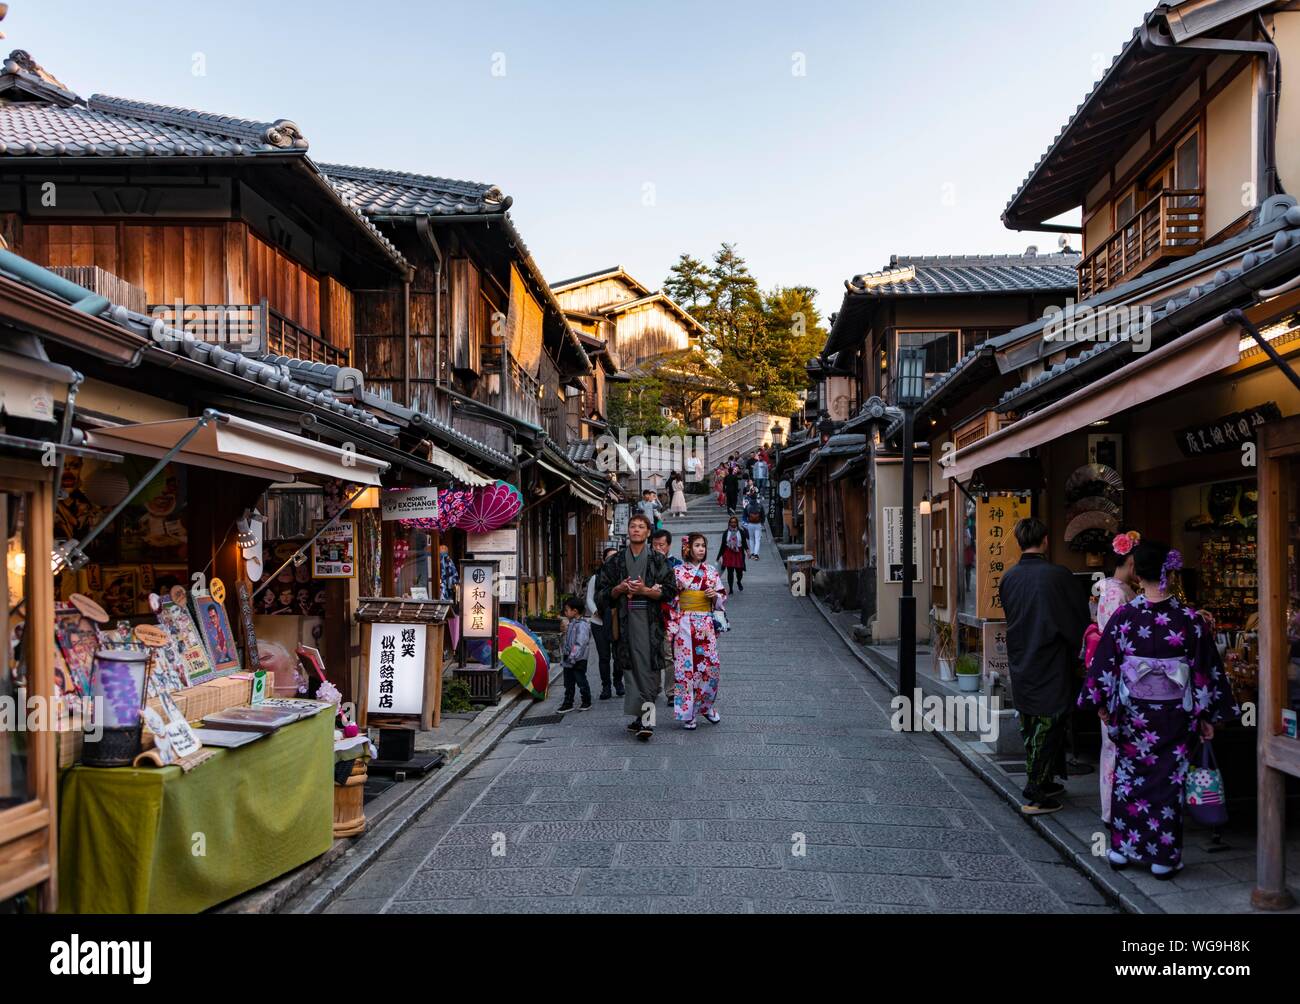 Pedoni in un vicolo, Matsubara dori vicolo storico nel centro storico con case tradizionali giapponesi, Kiyomizu, Kyoto, Giappone Foto Stock